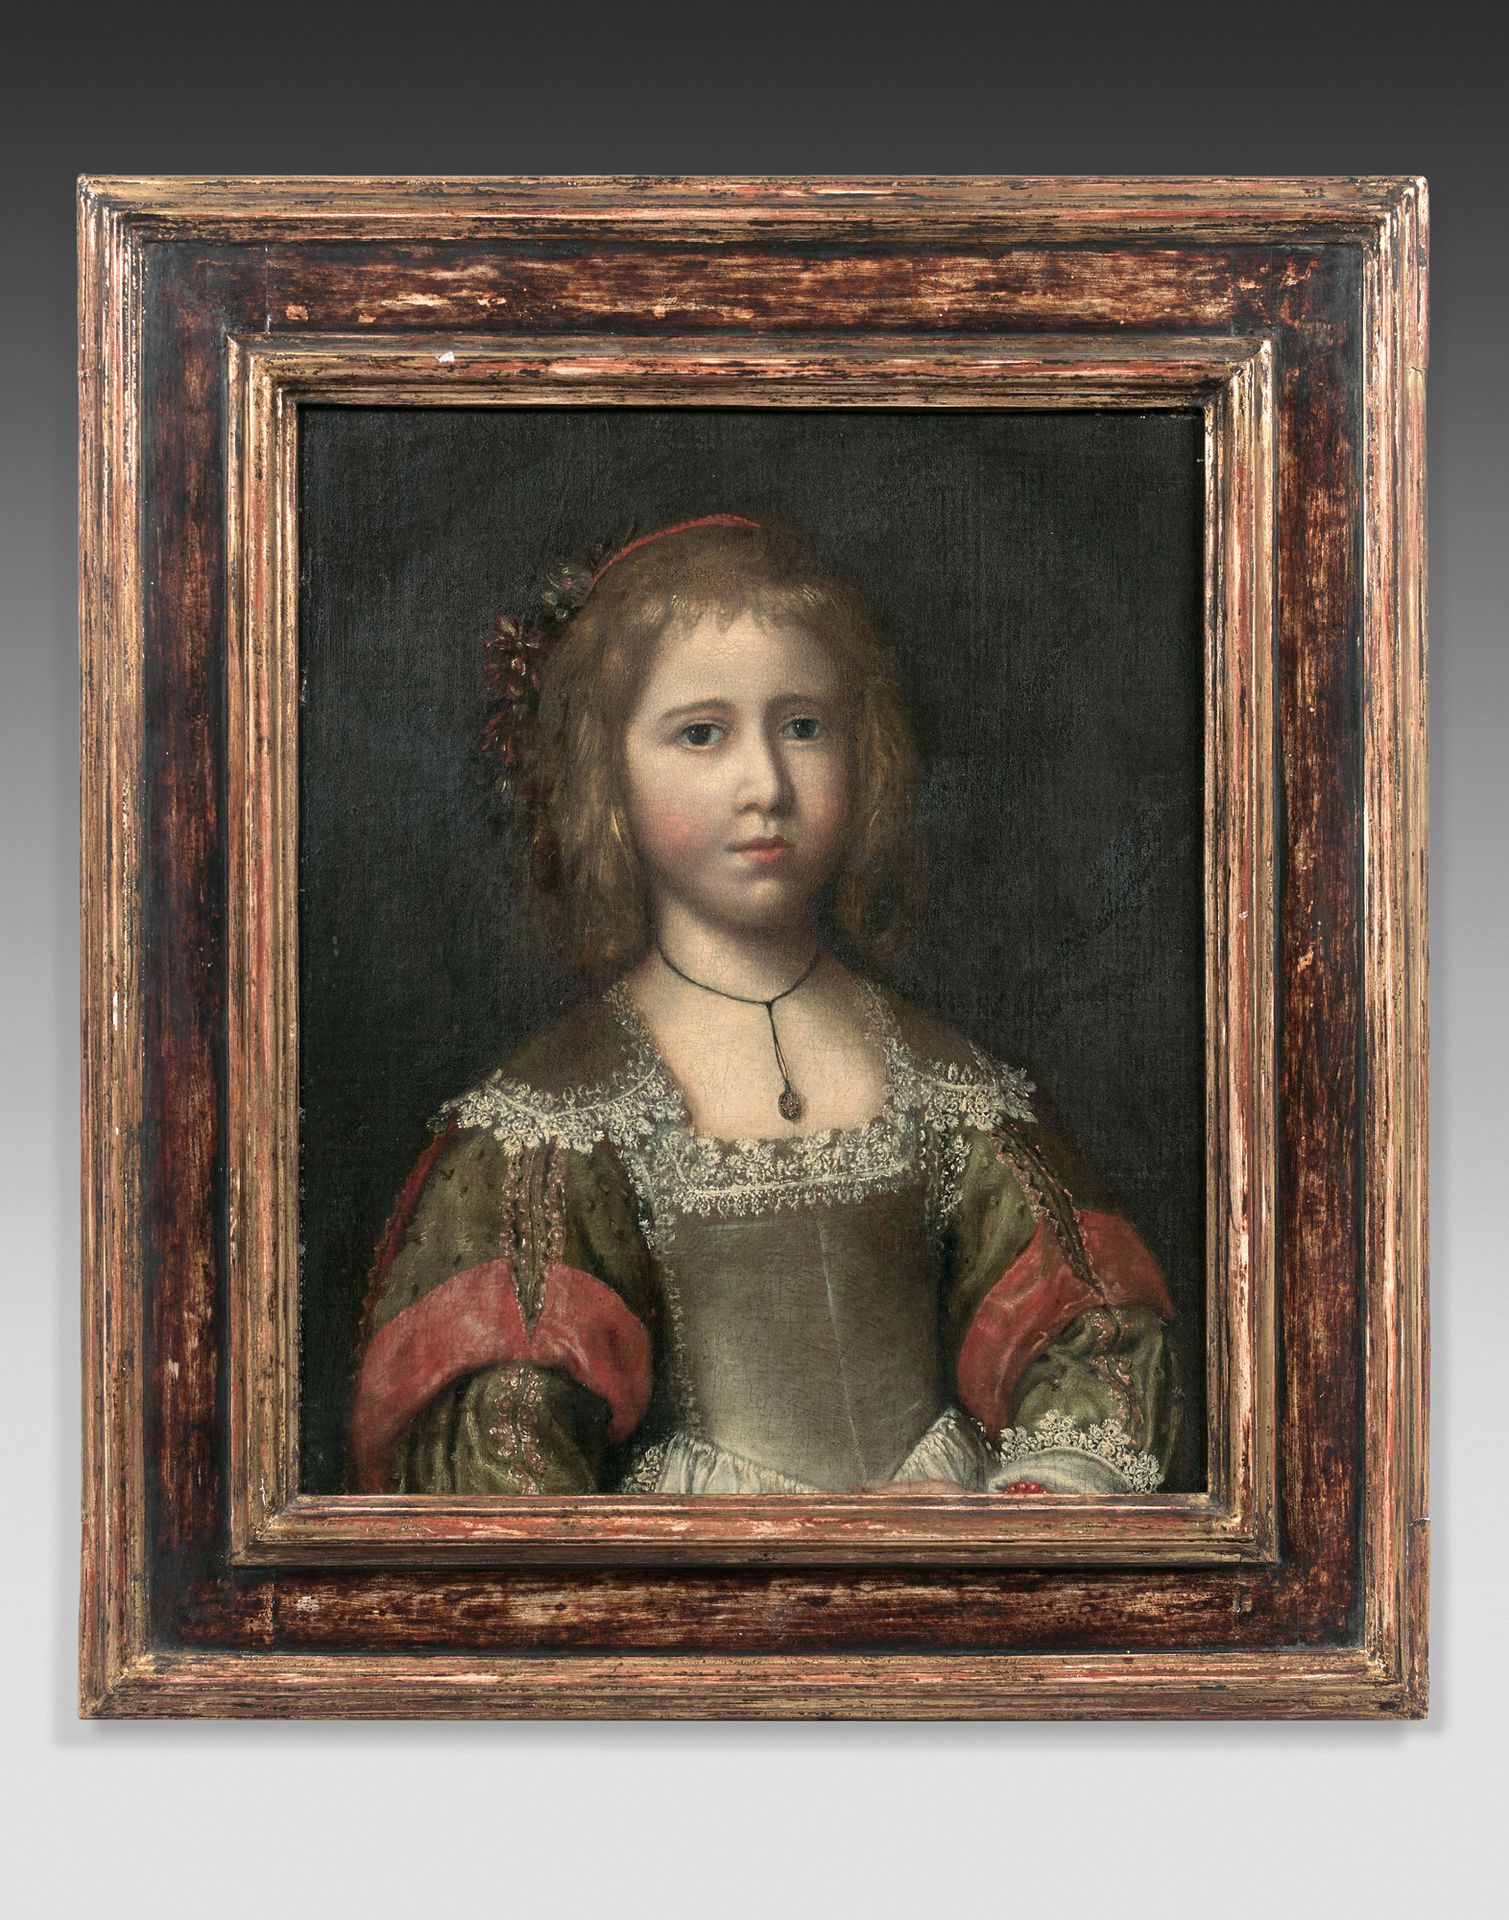 École FRANÇAISE vers 1650 Retrato de una joven
Lienzo
53 x 43,5 cm